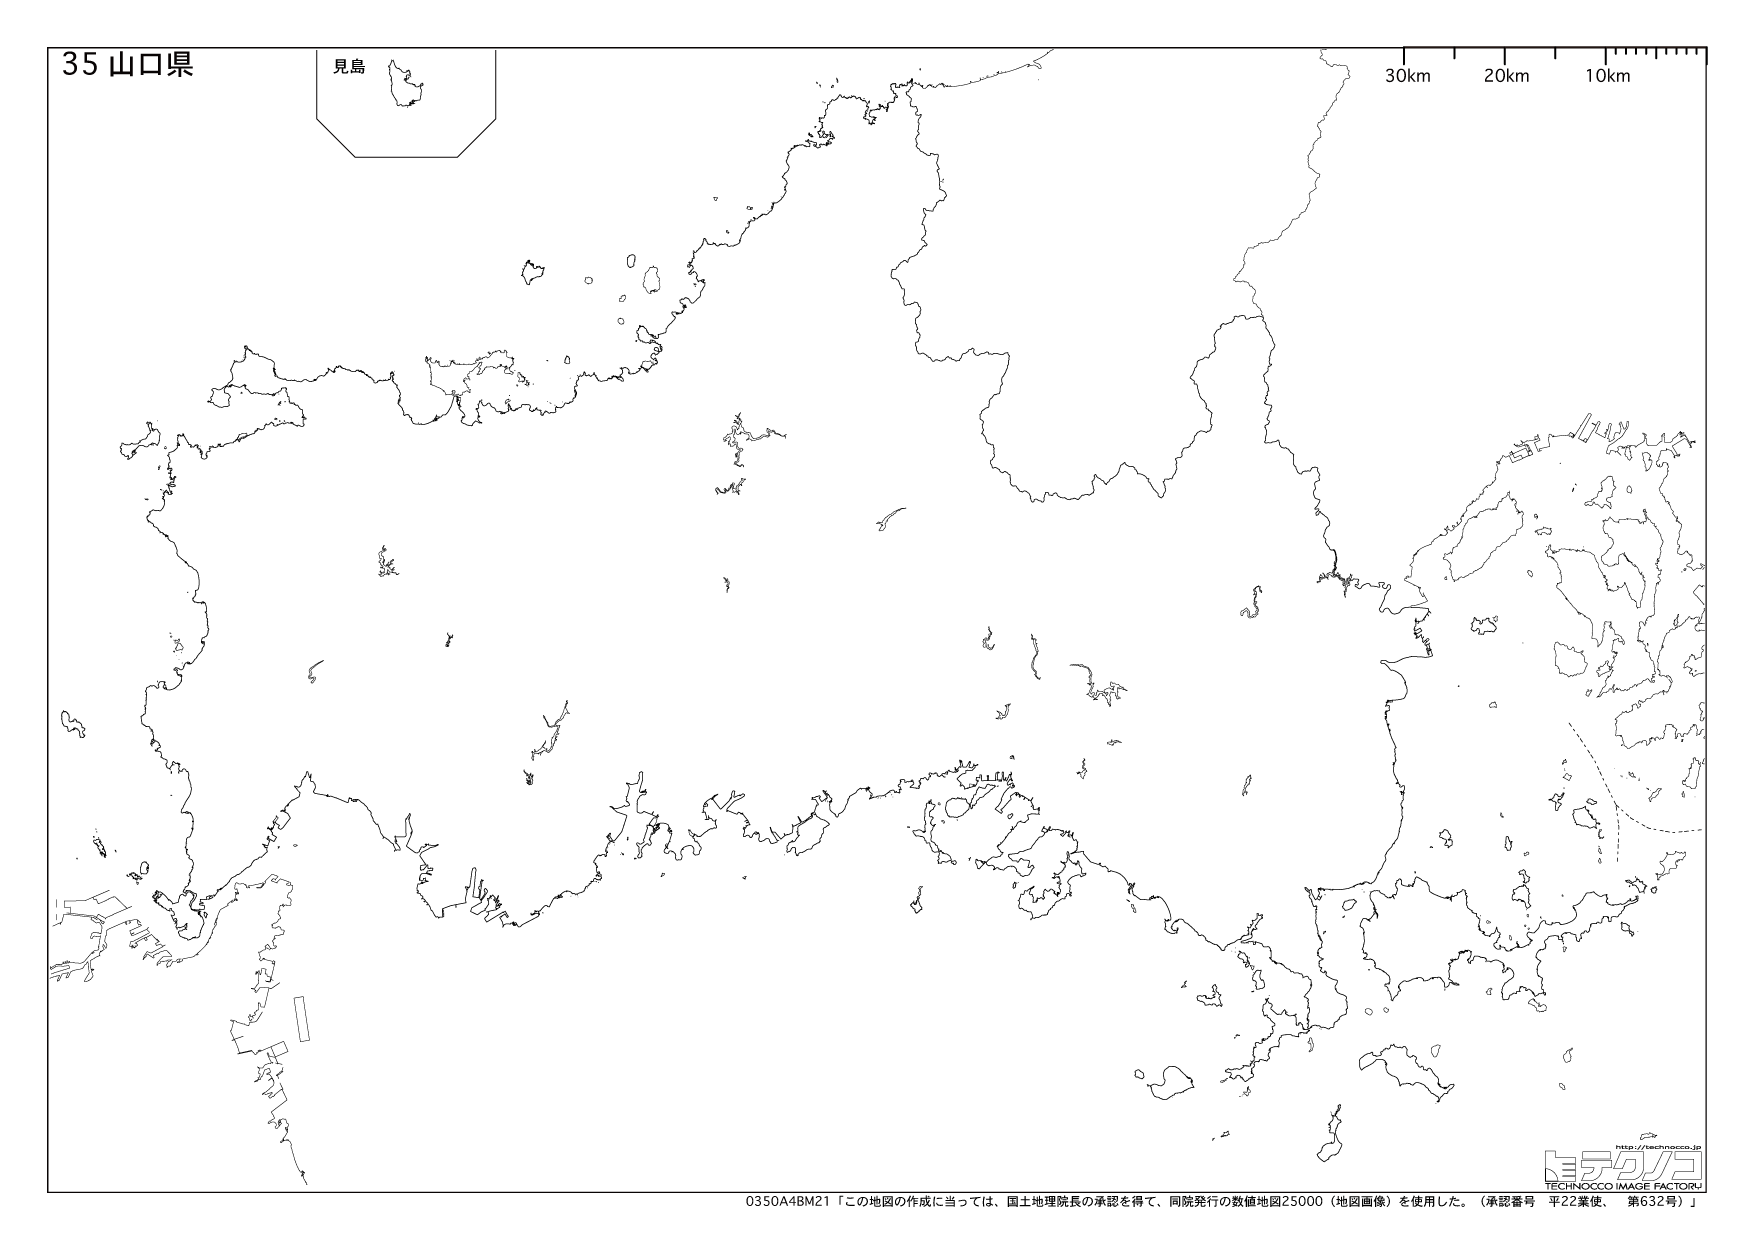 山口県の白地図と市町村の合併情報